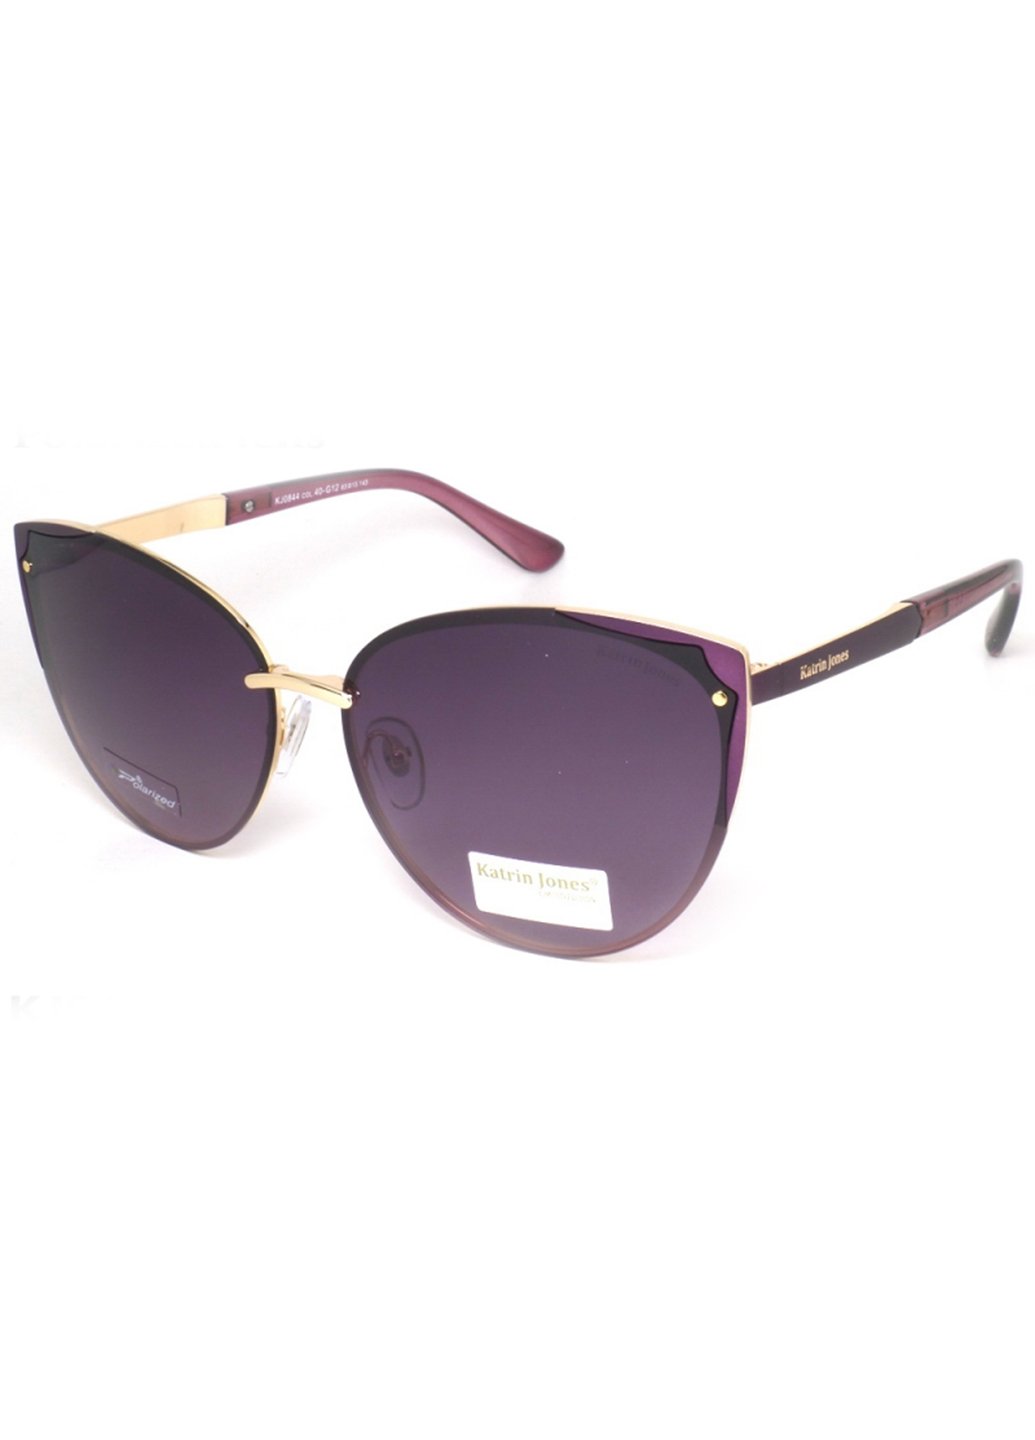 Купить Женские солнцезащитные очки Katrin Jones с поляризацией KJ0844 180008 - Фиолетовый в интернет-магазине